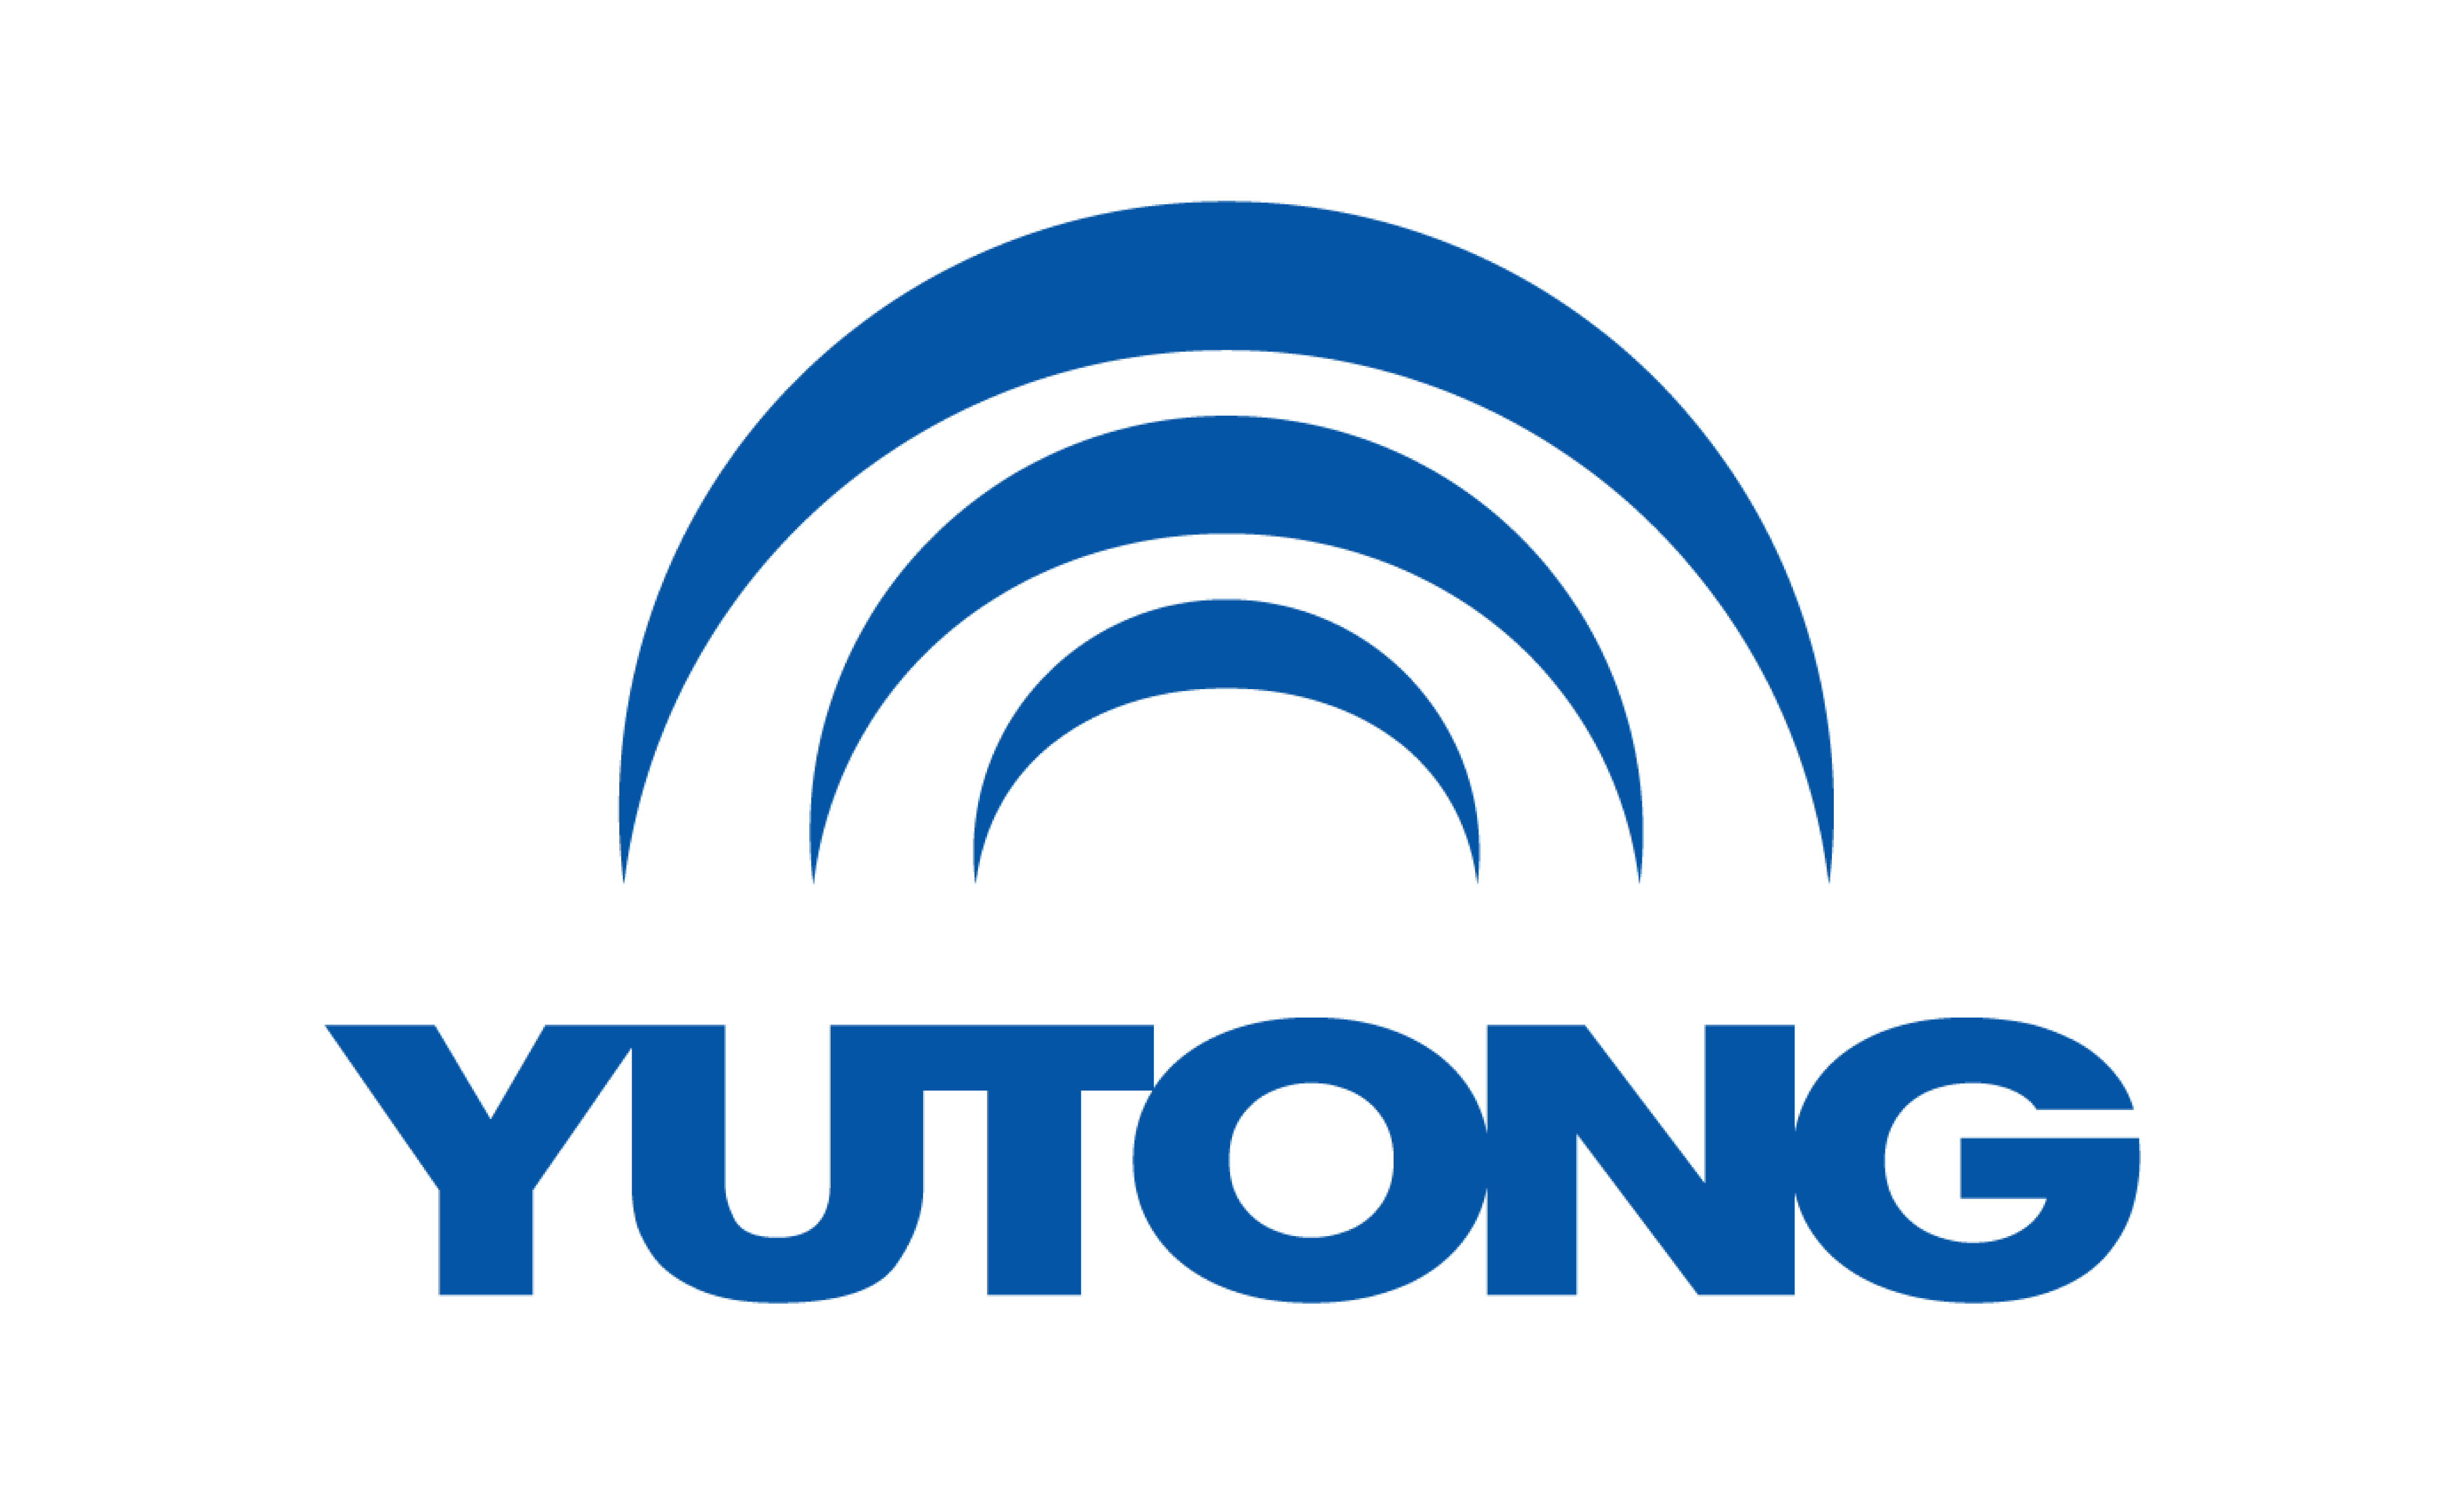 Yutong spareparts